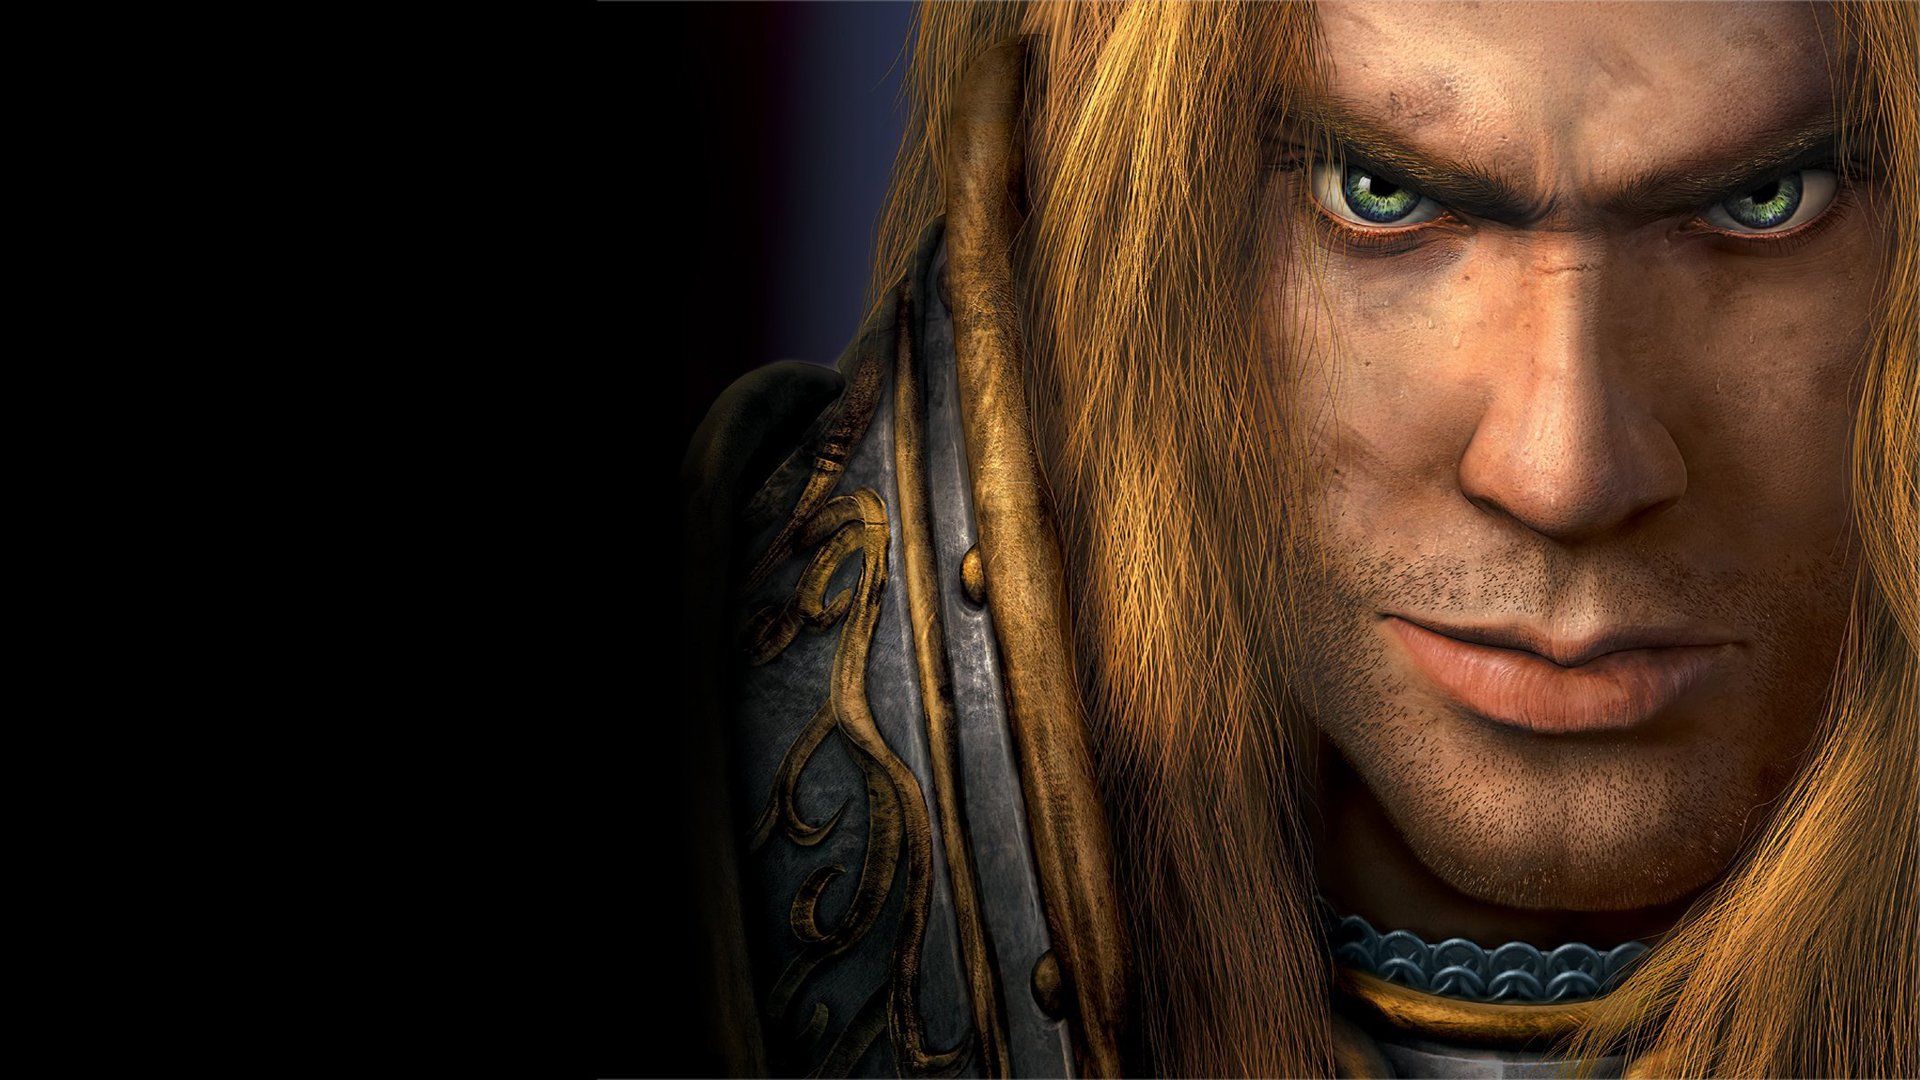 Warcraft 3 Reign of Chaos Wallpaper